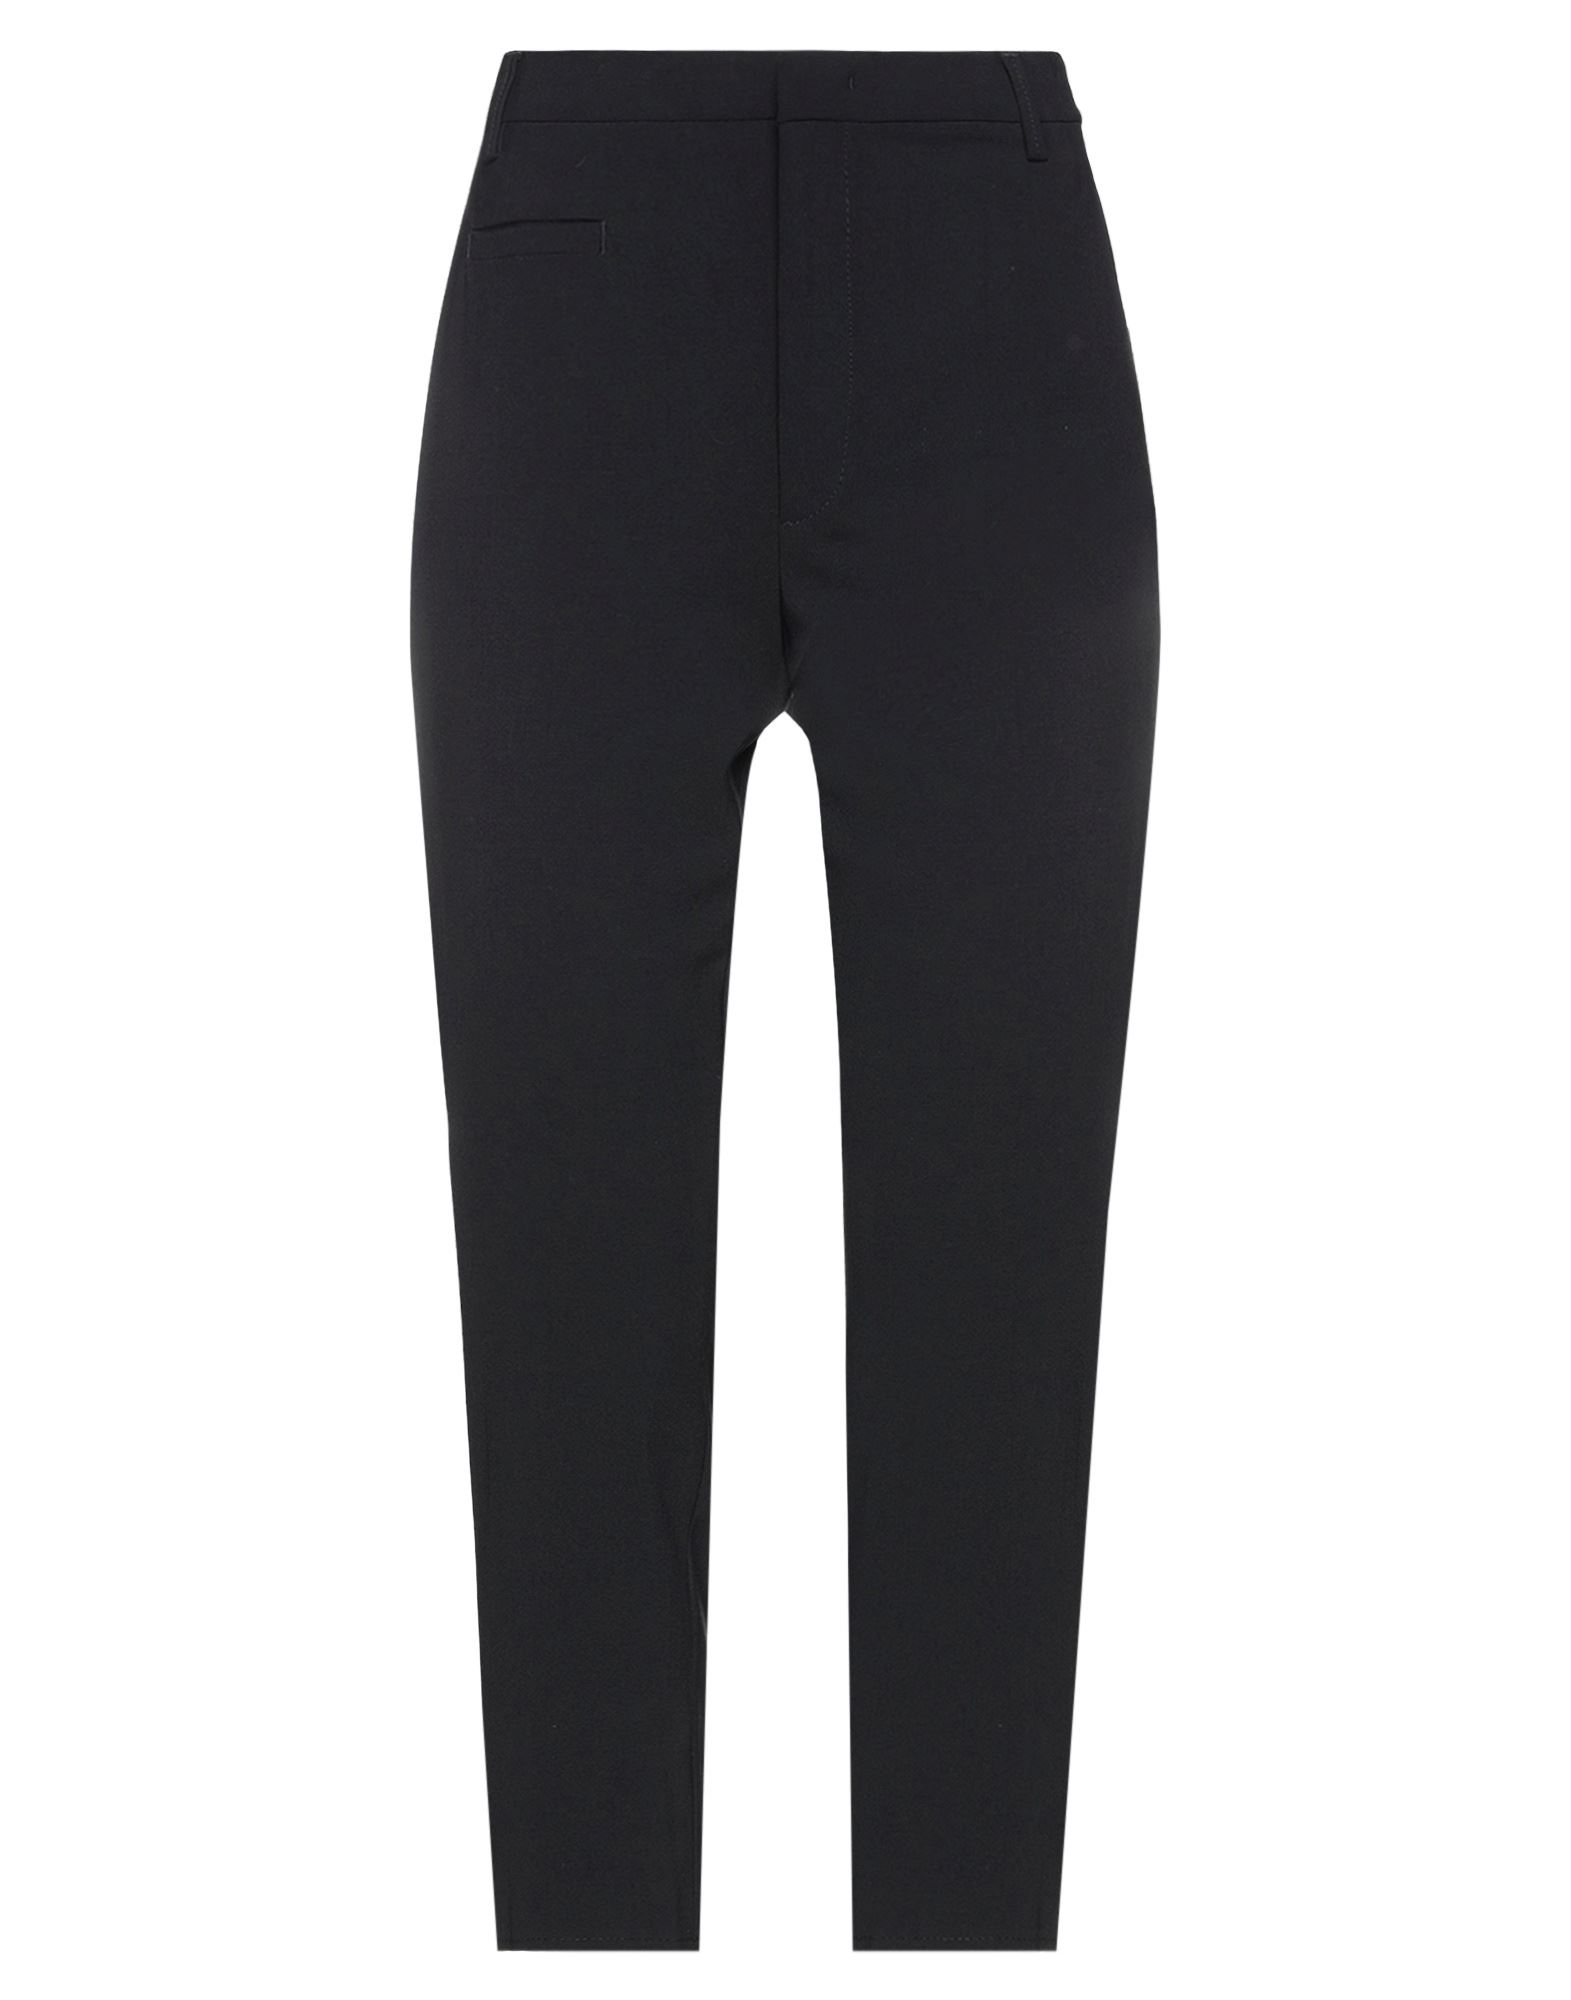 Dondup Woman Cropped Pants Black Size 8 Polyester, Virgin Wool, Elastane